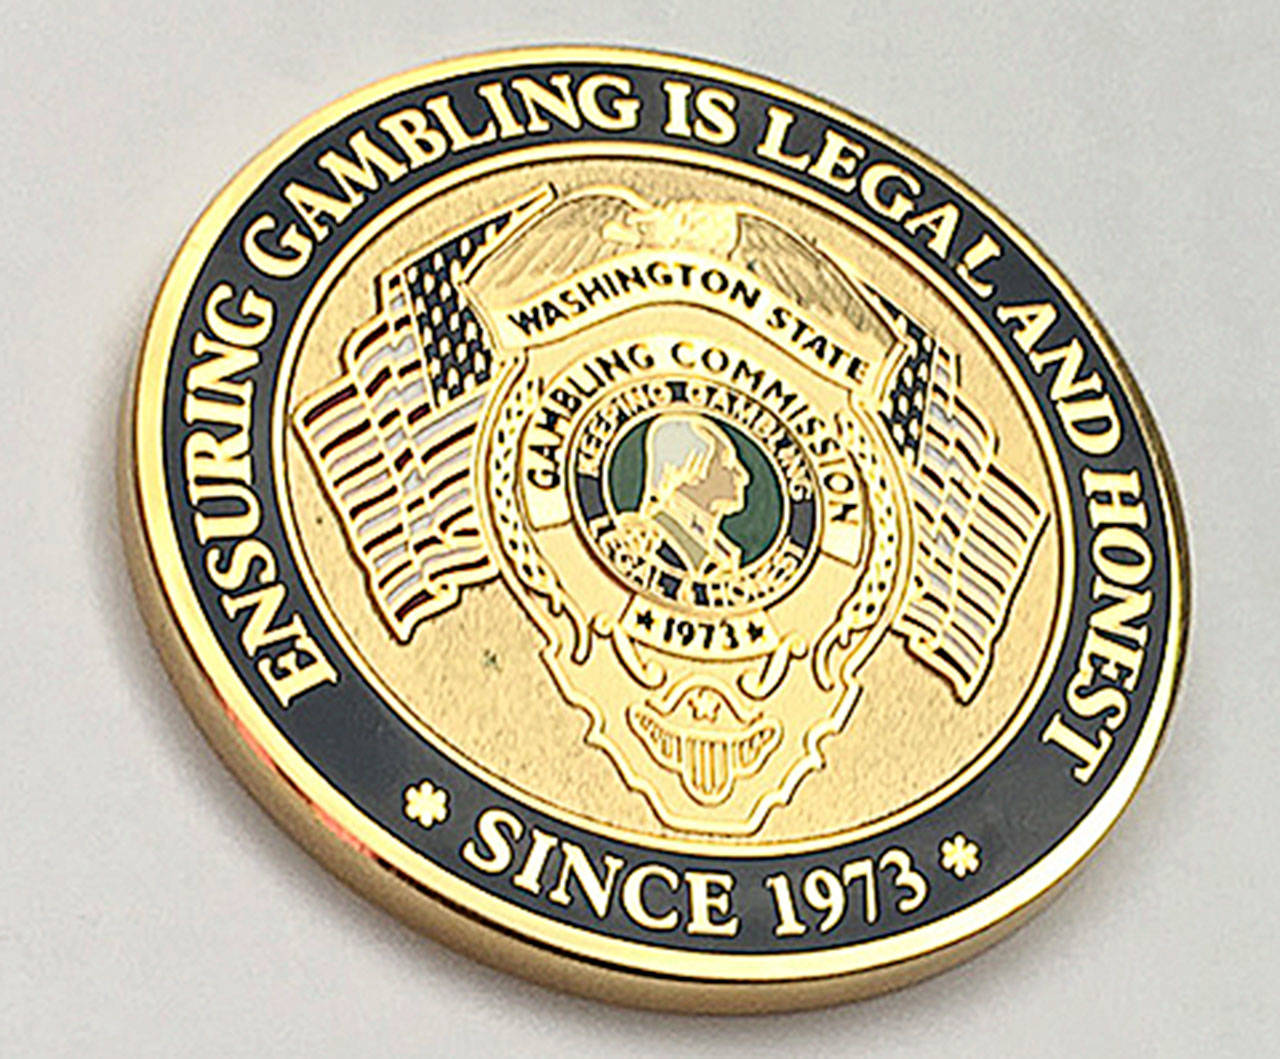 The emblem of the Washington State Gambling Commission. (State of Washington image)